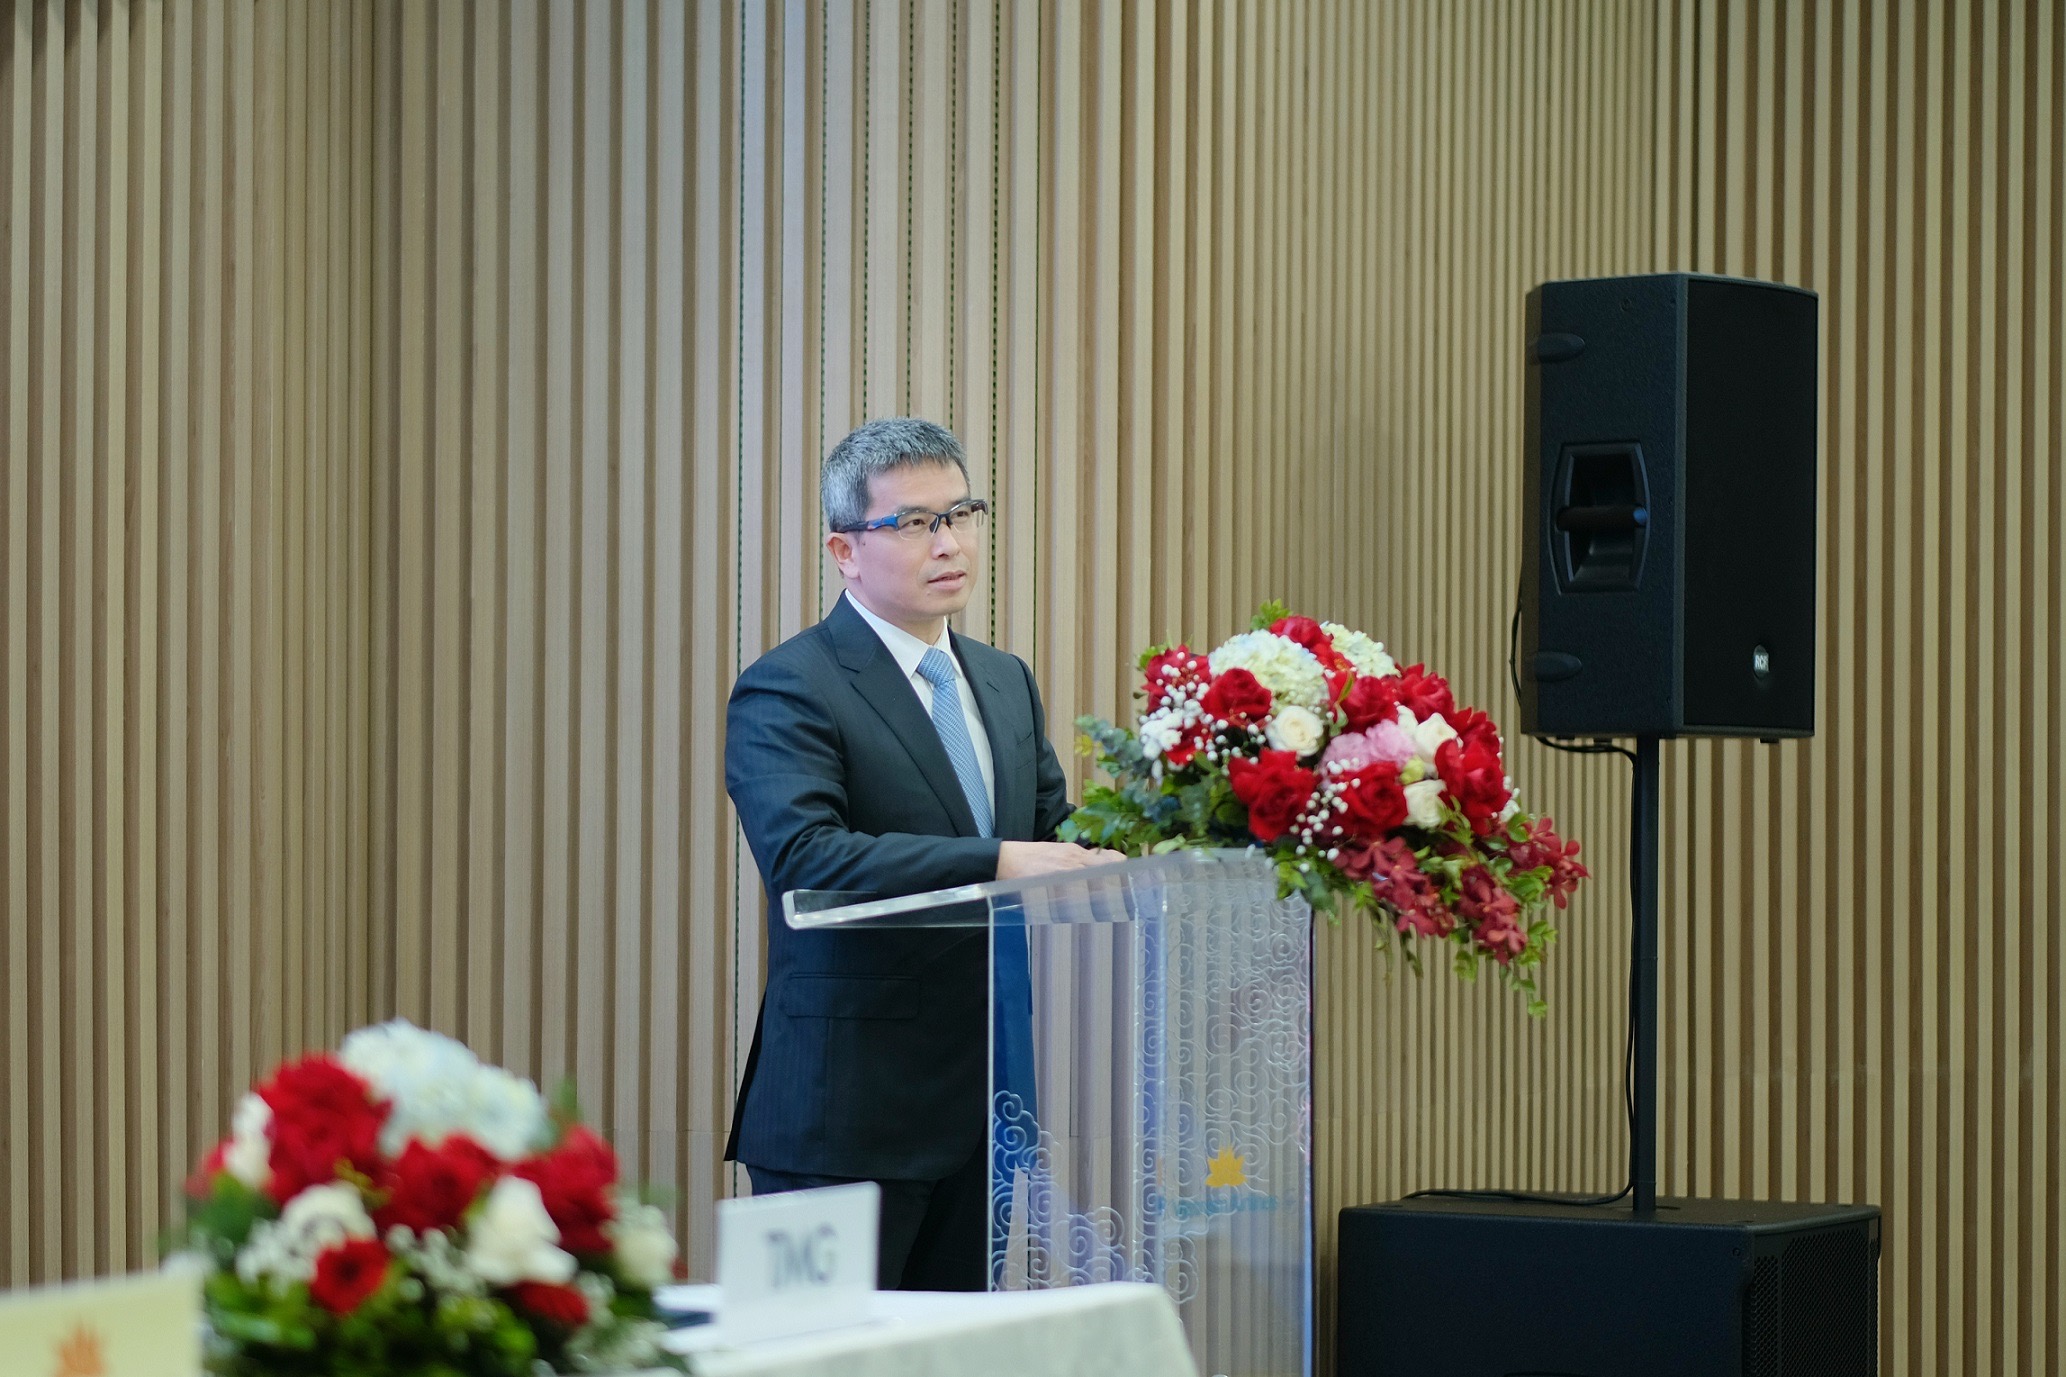 Ông Trần Trọng Kiên - Chủ tịch HĐQT kiêm Tổng giám đốc TMG phát biểu tại sự kiện